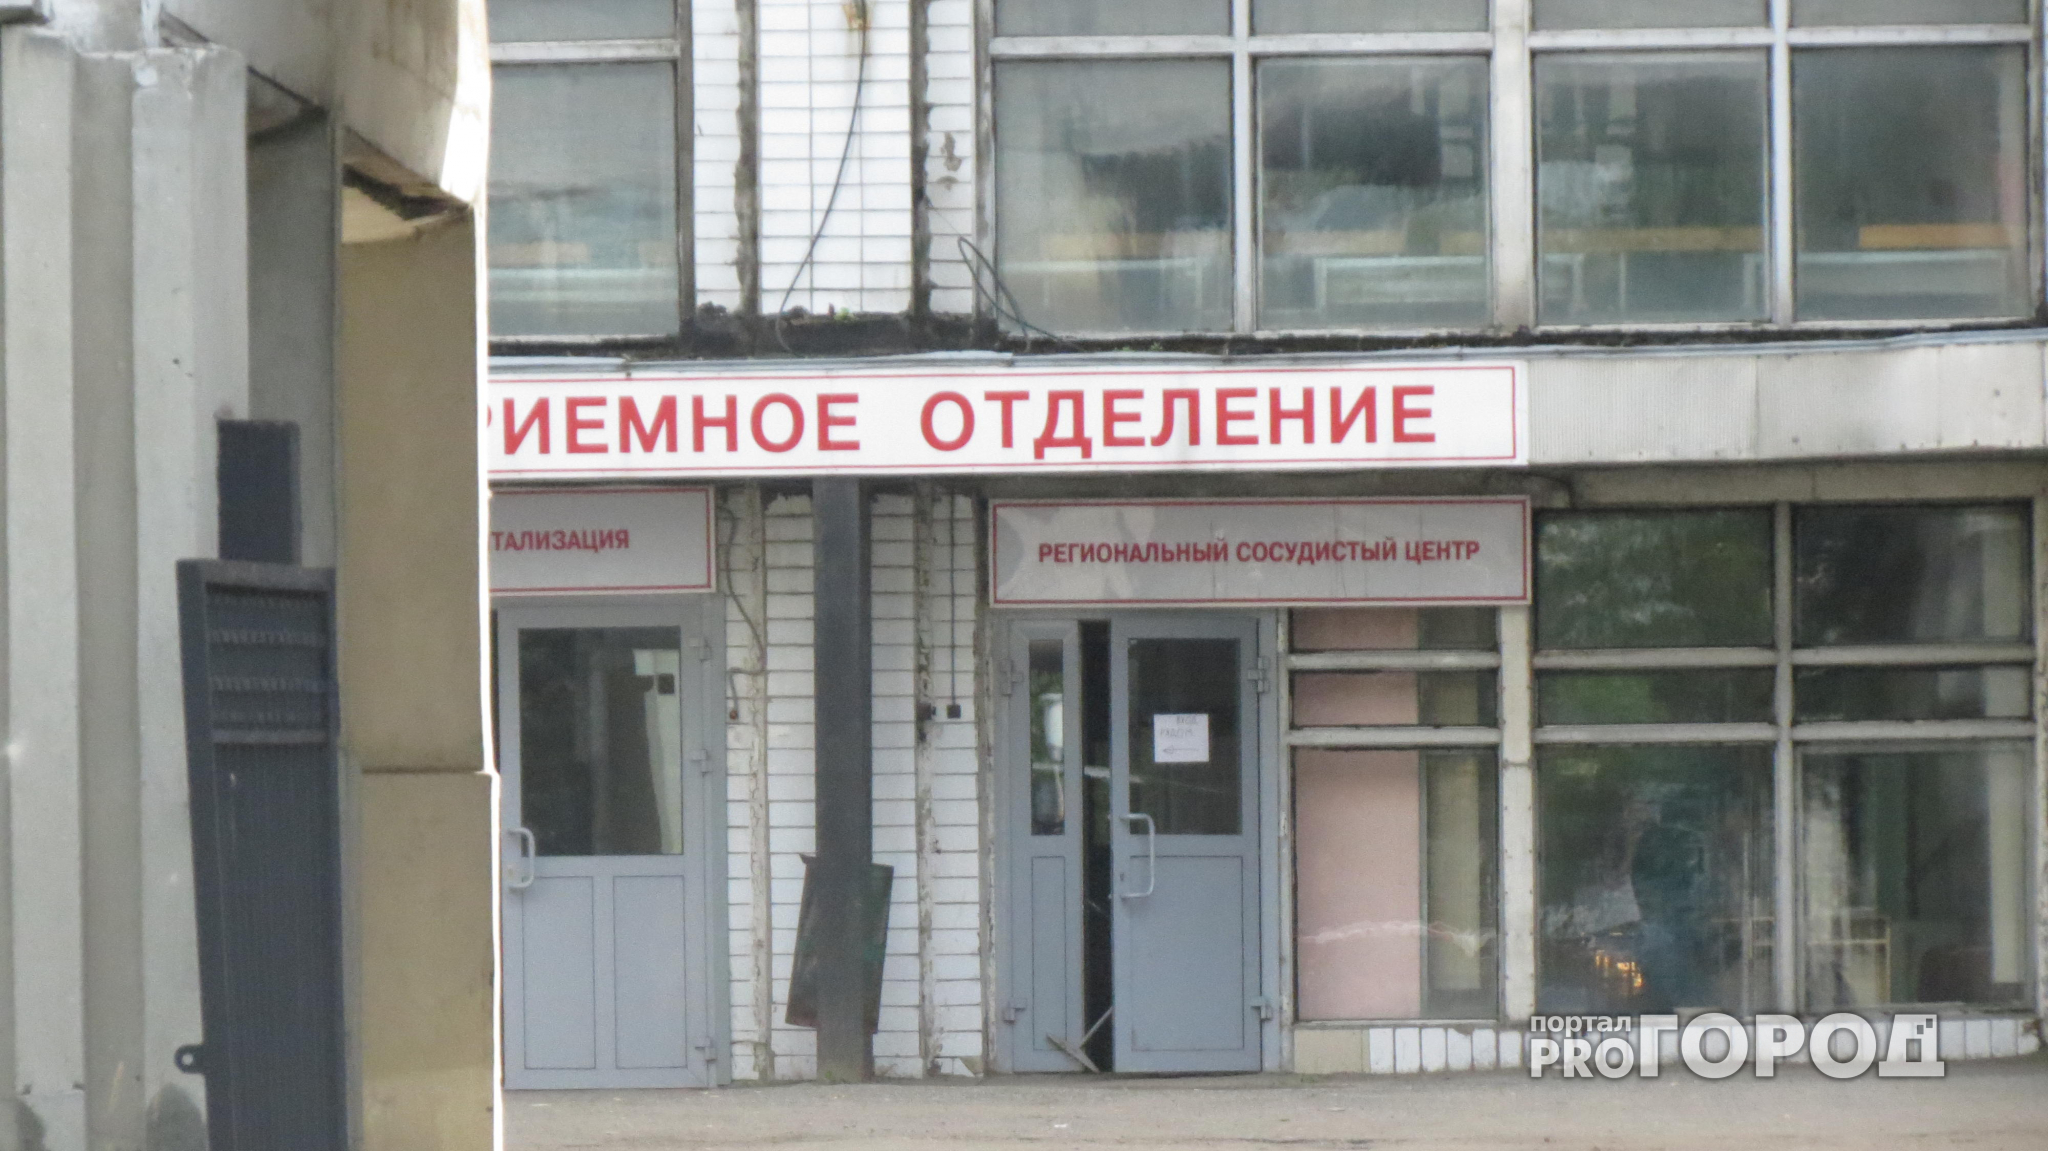 Выживший в массовой резне на нижегородском заводе дал интервью федеральному каналу (ВИДЕО)